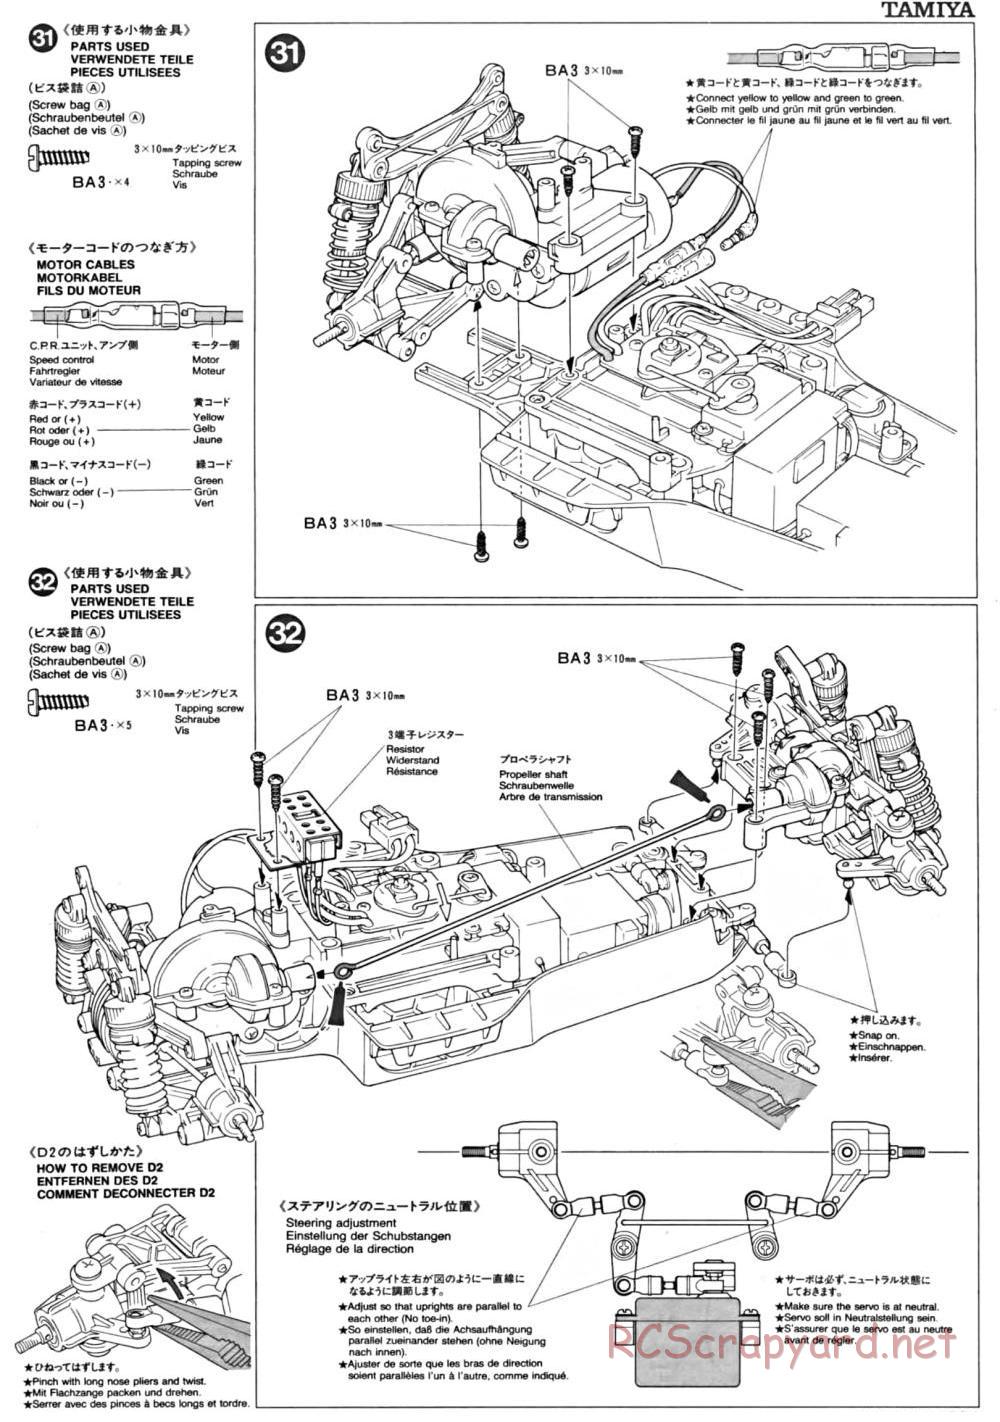 Tamiya - TA-01 Chassis - Manual - Page 12